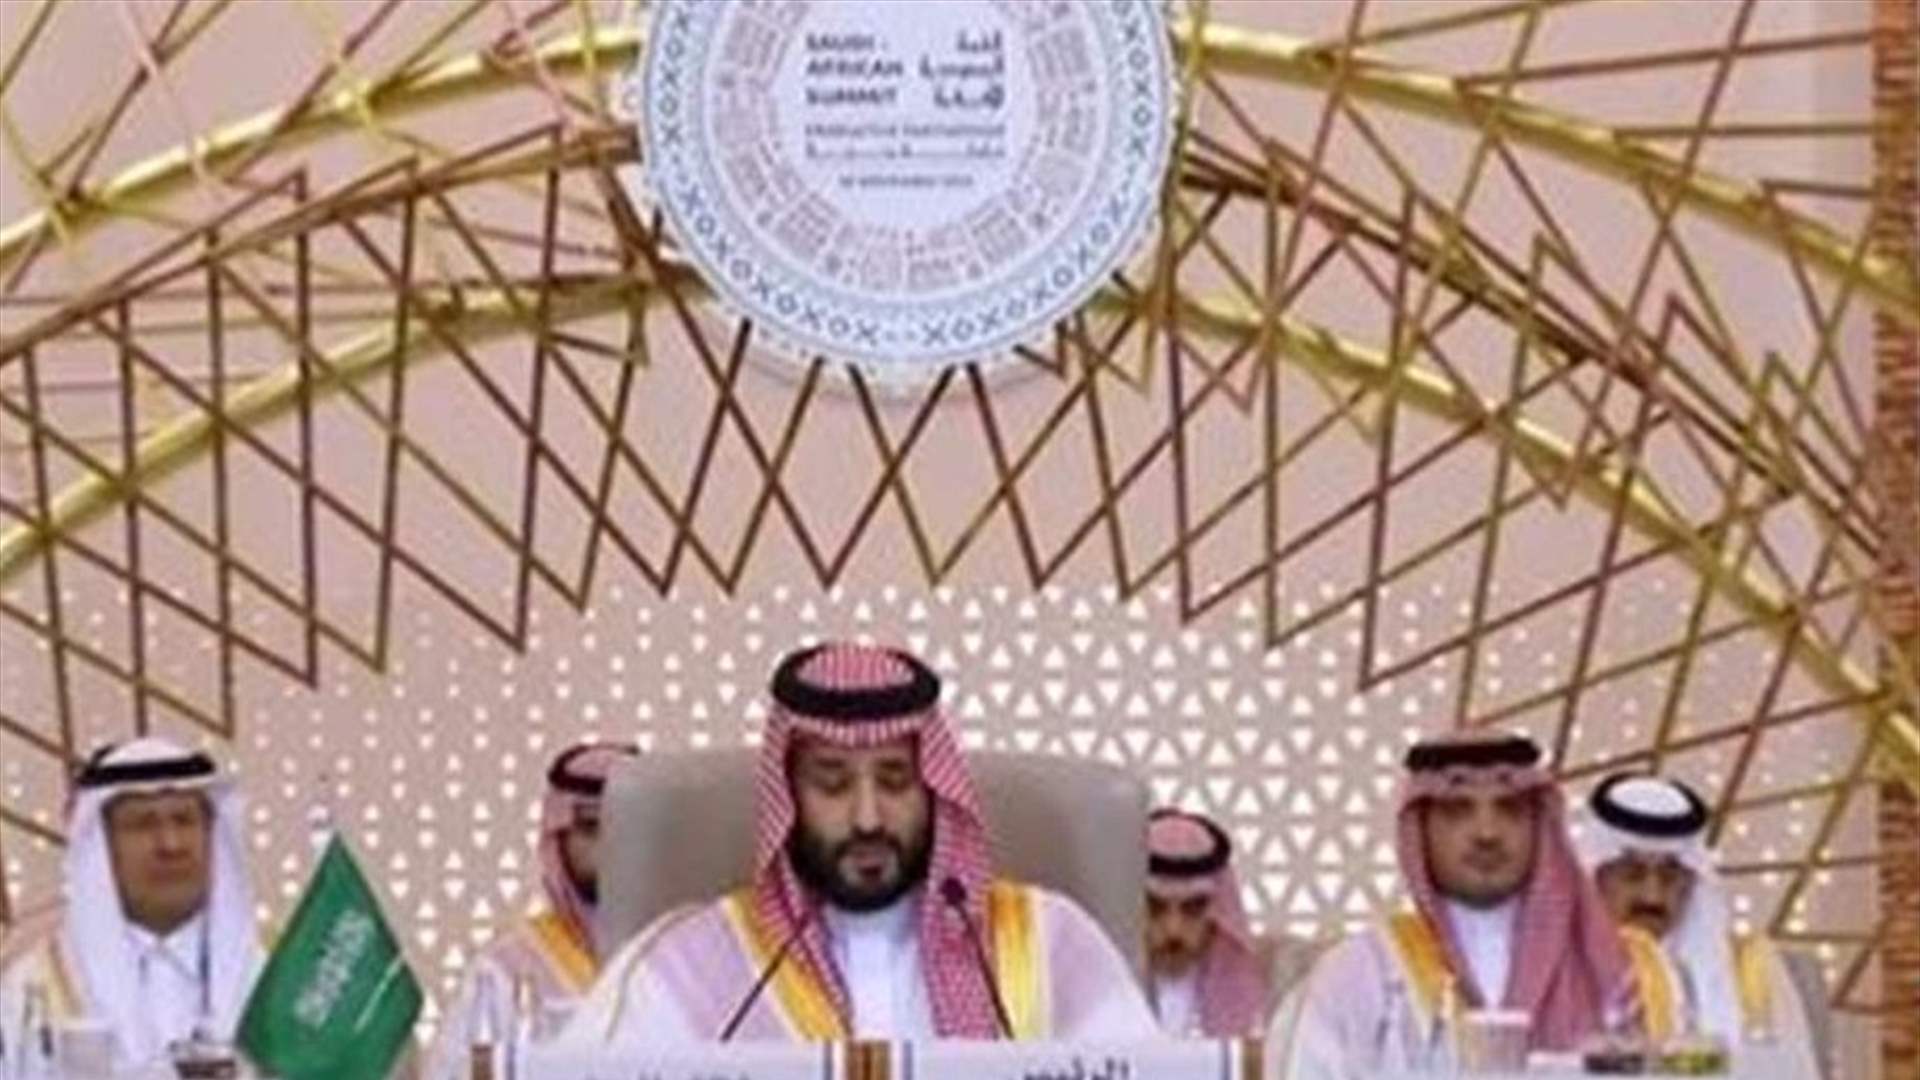 بن سلمان في افتتاح القمة السعودية الافريقية :  ندين ما يشهده قطاع غزة من انتهاكات و يجب وقف التهجير القسري للفلسطينيين